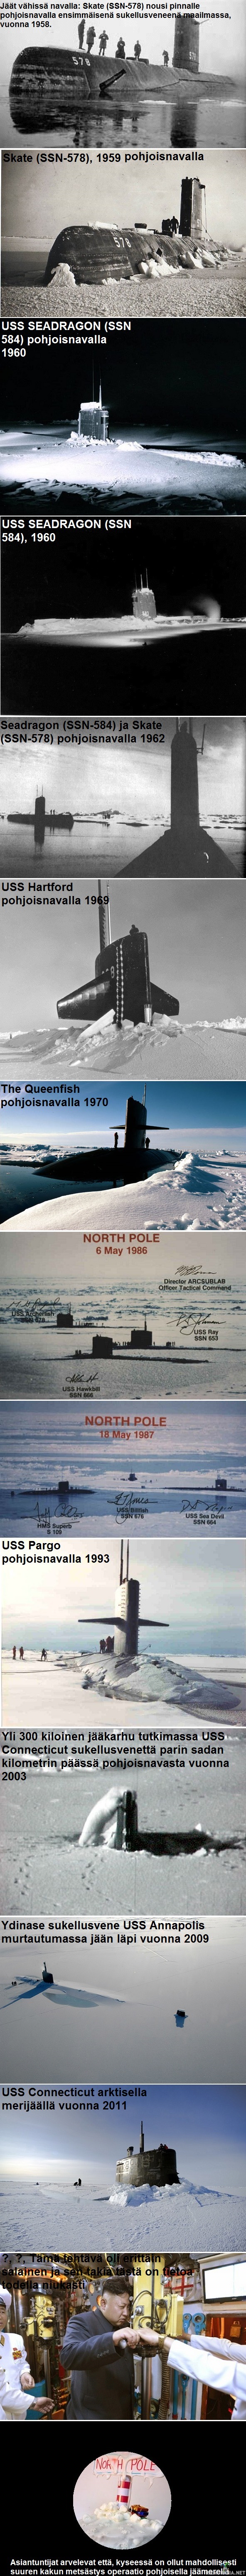 Naparetkeilyä sukellusveneillä vuodesta 1958 asti  nykypäiviin saakka - Yhdysvaltalainen sukellusvene USS Nautilus alitti napajään vuonna 1958 ja samana vuonna toinen sukellusvene USS Skate nousi pintaan pohjoisnavalla.

Pohjoisnapa on maapallon pohjoisin paikka, 90 astetta 0 minuuttia 0 sekuntia pohjoista leveyttä. Pohjoisnapa sijaitsee Pohjoisella jäämerellä keskellä ahto- ja kiintojääaluetta, joka kutistuu ja laajenee vuodenaikojen mukaan ja on yleensä vain muutaman metrin paksuinen. Koska pohjoisnapa sijaitsee merenpinnan tasalla ja merivirrat ja tuulet lämmittävät sitä enemmän kuin etelänapaa, se ei ole yhtä kylmä – kylmimmilläänkin noin −68 celsiusastetta. Tavallisia ovat 50–40 °C pakkaset talvella. Kesällä taas lämpötilat ovat +5 °C ja -5 °C asteen välillä ja keskiarvollisesti lähellä nollaa. Pohjoisnavalla ei aina ole jääpeitettä, koska sinnekkin voi syntyä suuria railoja väliaikaisesti ja ne eivät jäädy kesällä, vaan liikkuvat jäät sulkevat useasti ne. Pohjoisnavalla jää ei ole kauhean paksua noin 1-3m, koska merivirrat kuljettavat jäitä kohti etelää missä ne lopulta sulavat, mutta Beaufortinmeren pyörre-virtaus suojelee vanhaa merijäätä missä se voi olla jopa yli 10 vuotta vanhaa. Suurelta nykyään jää on vain 1-3 vuotista.